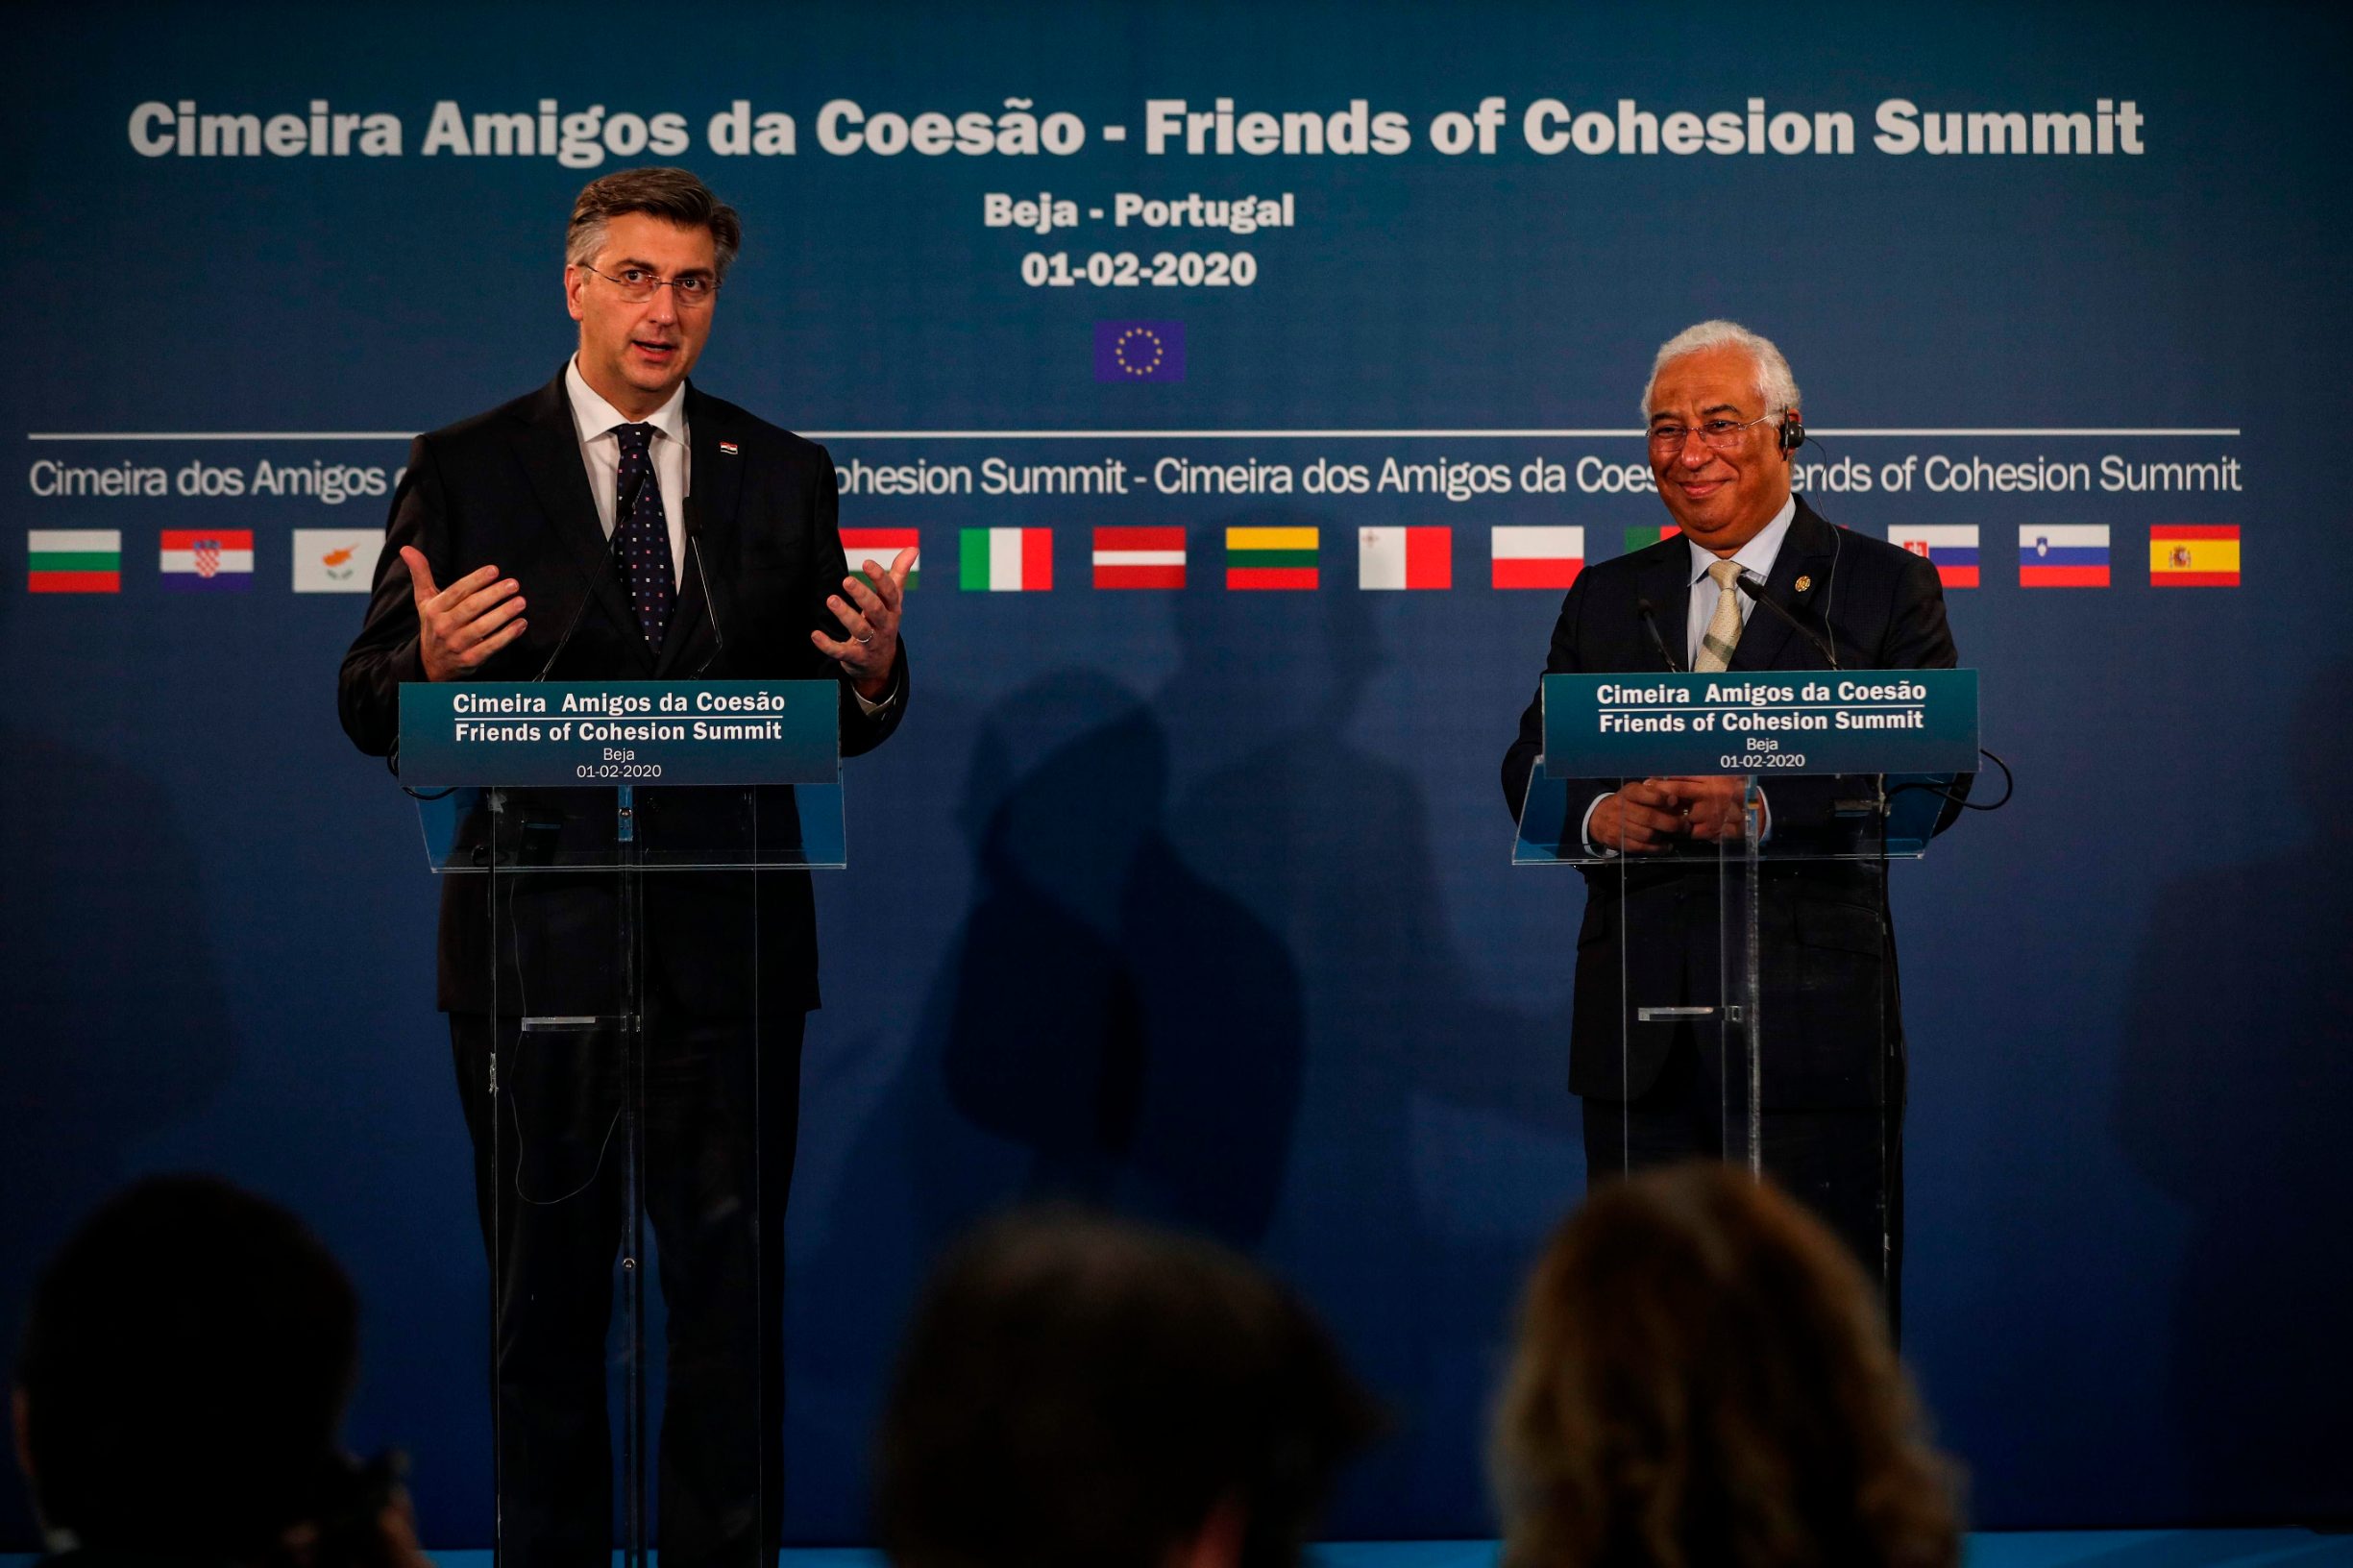 Portugalski premijer Antonio Costa i njegov hrvatski kolega Andrej Plenković tijekom konferencije za novinare nakon summita Prijatelja kohezije u portugalskom gradu Beja